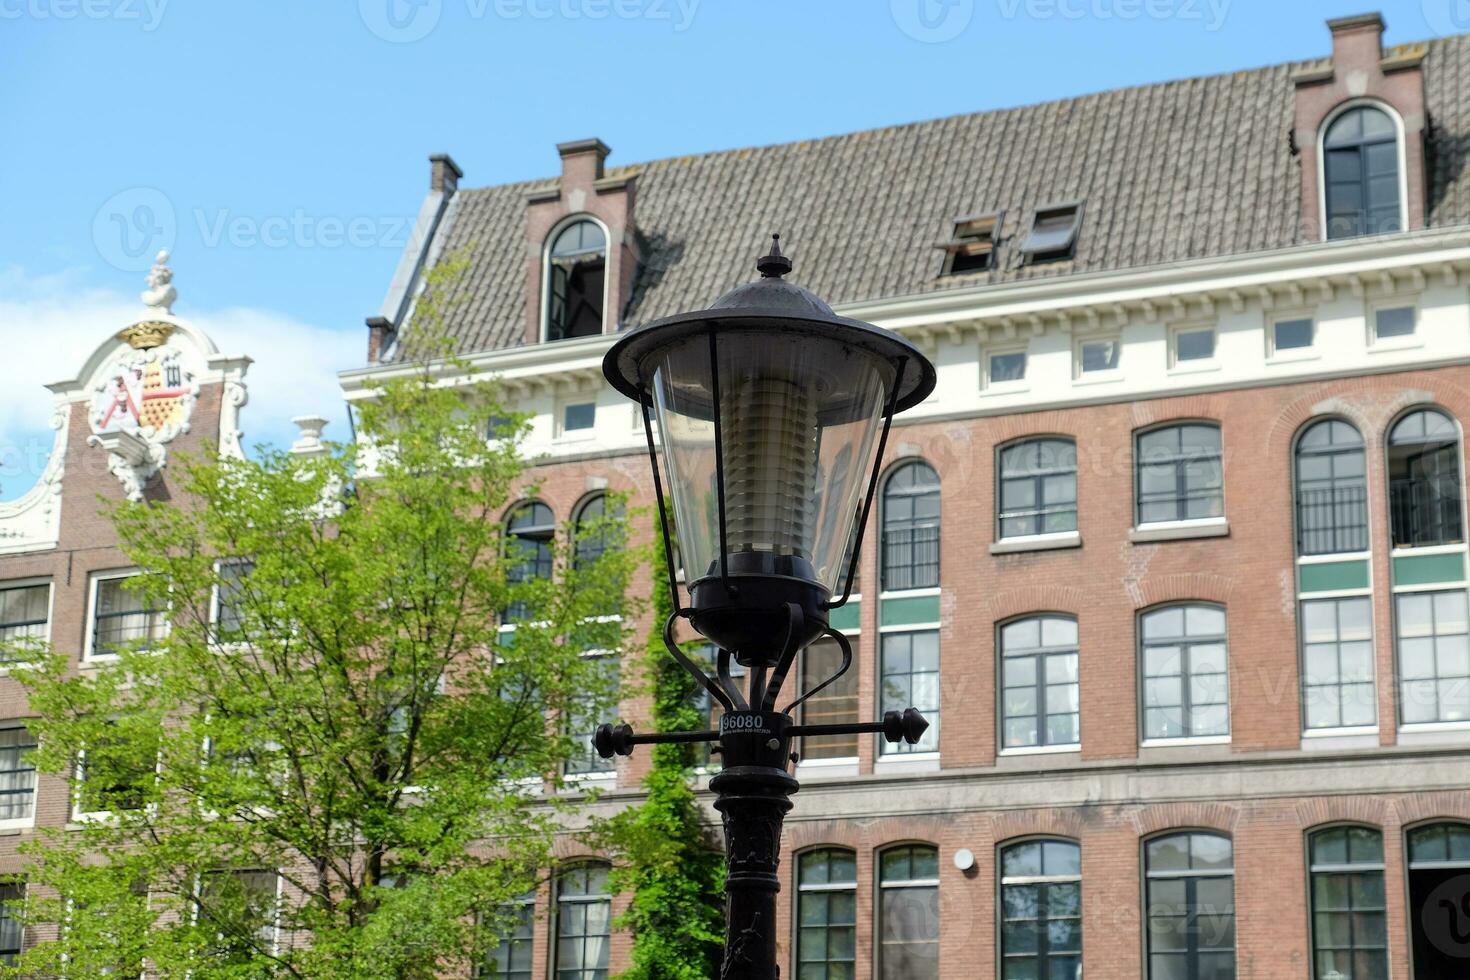 die niederländische Stadt Amsterdam foto